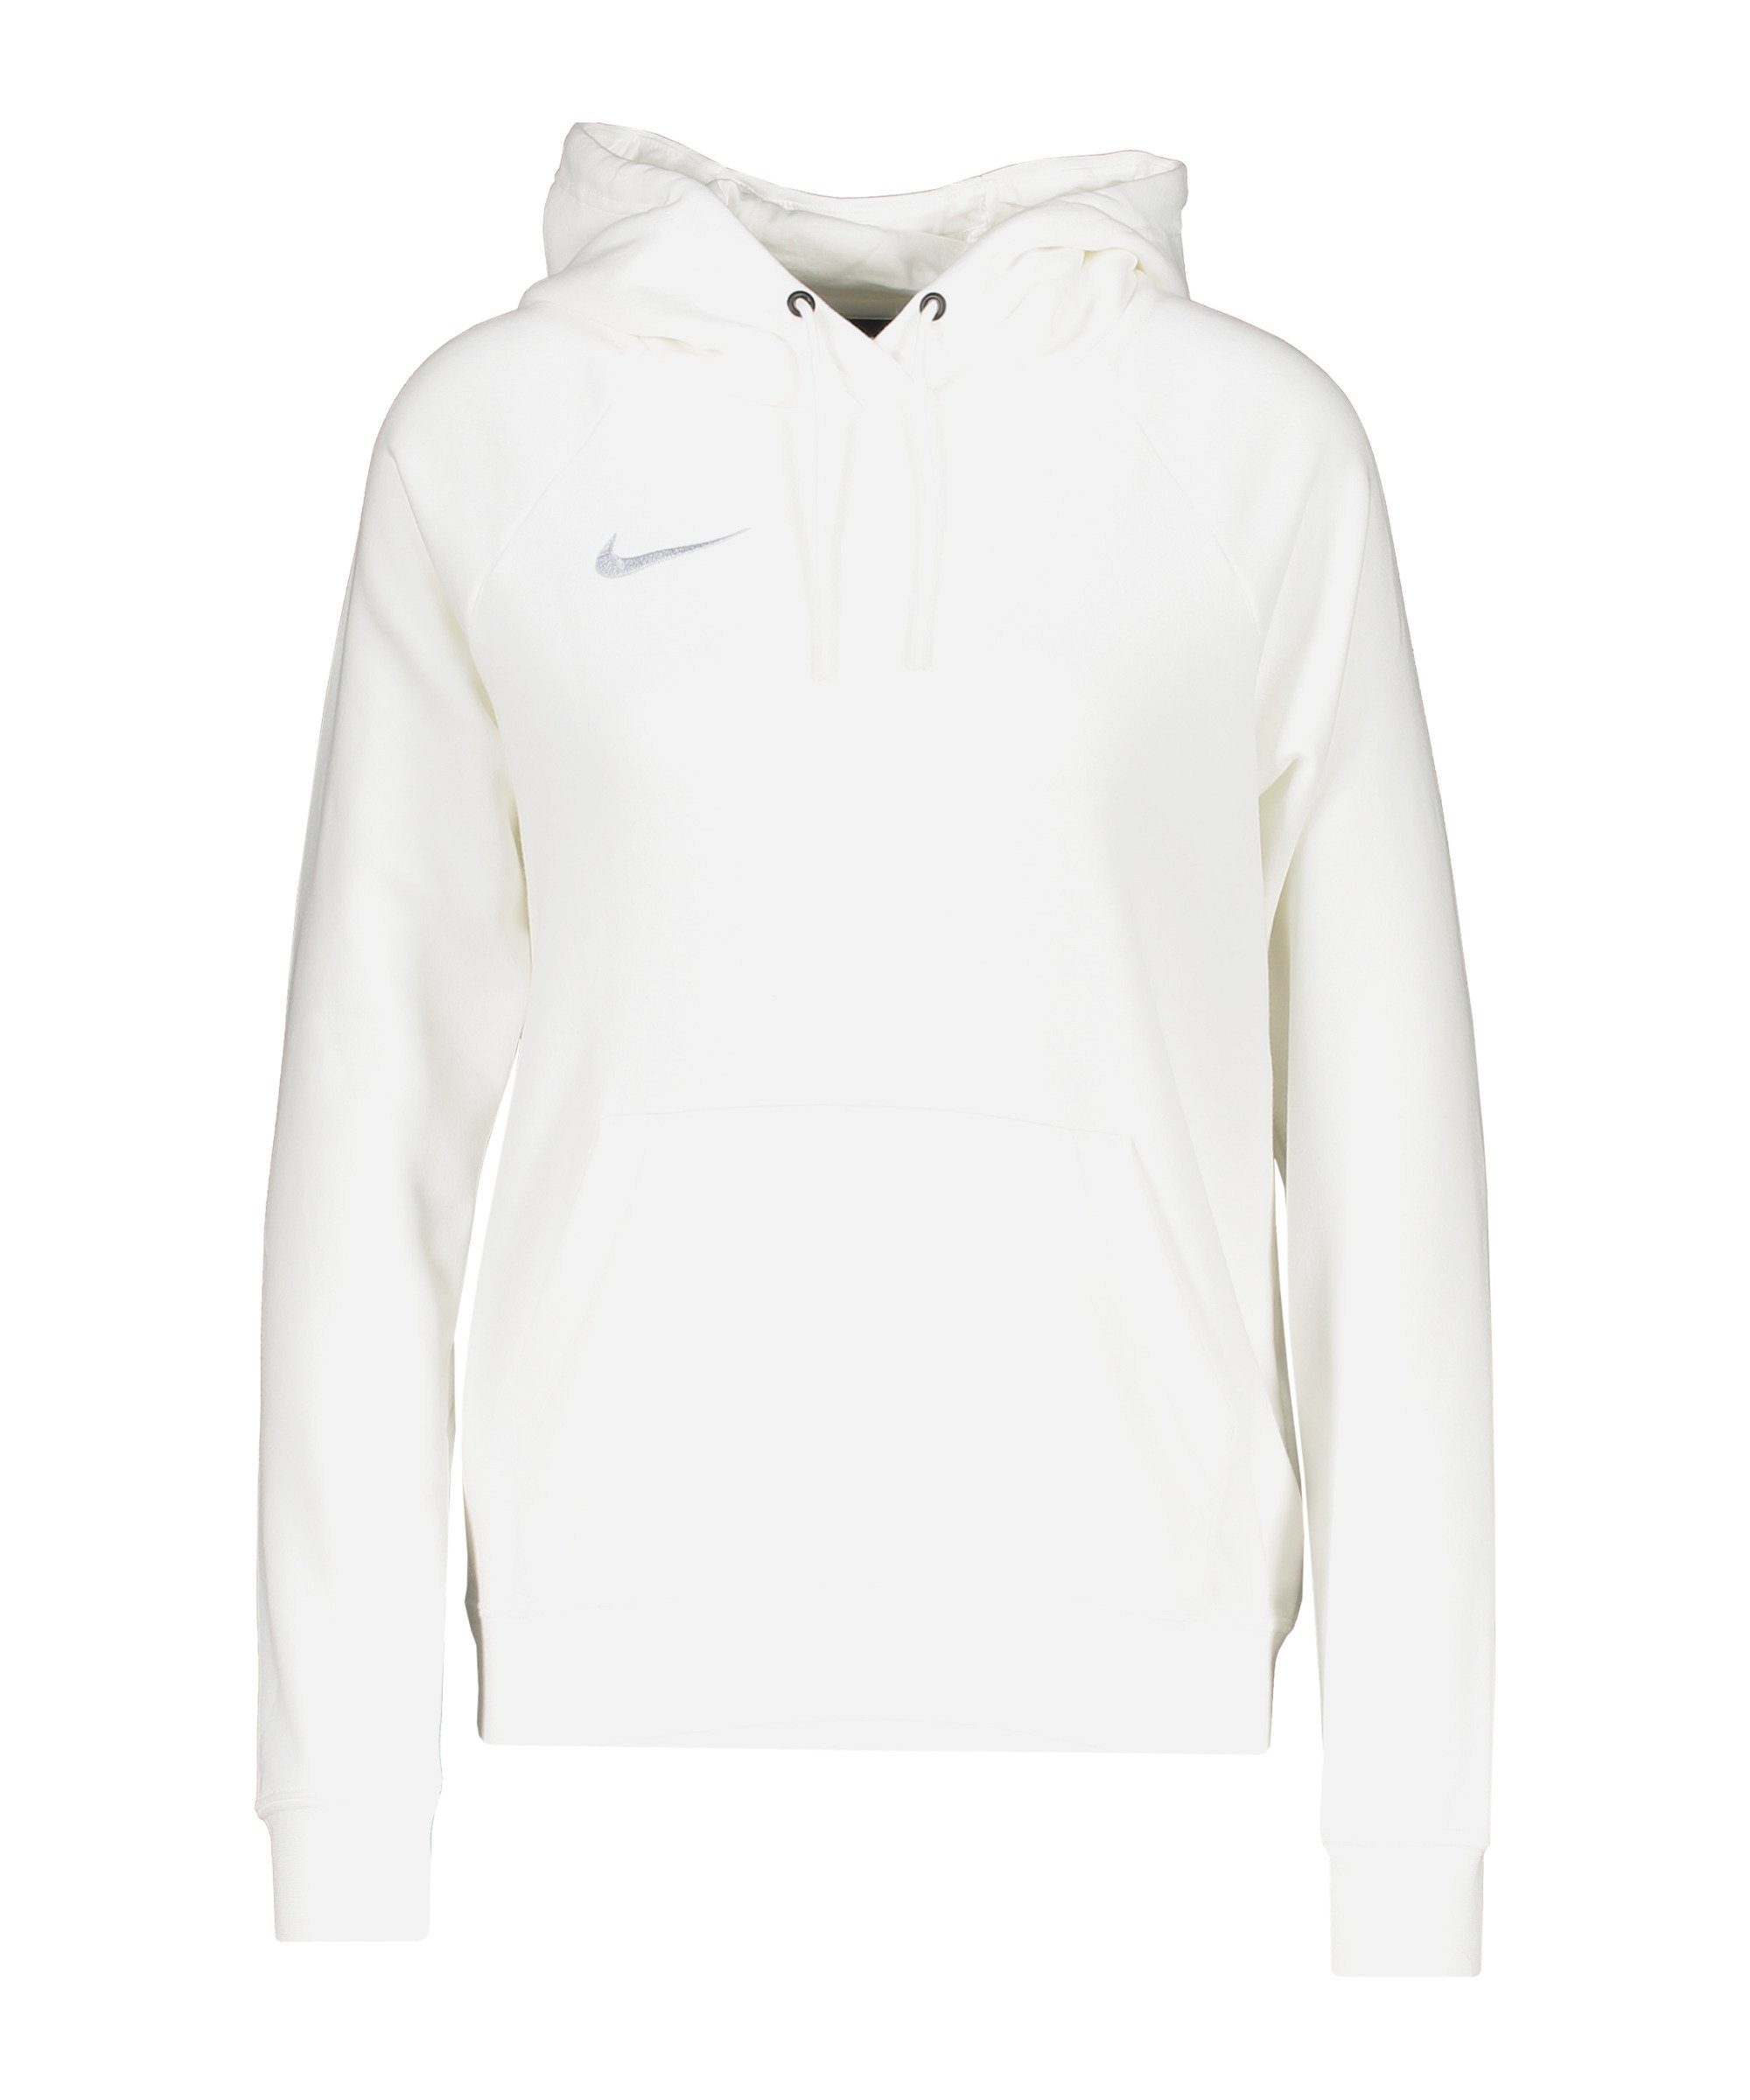 Nike Damen Sweatshirts online kaufen | OTTO